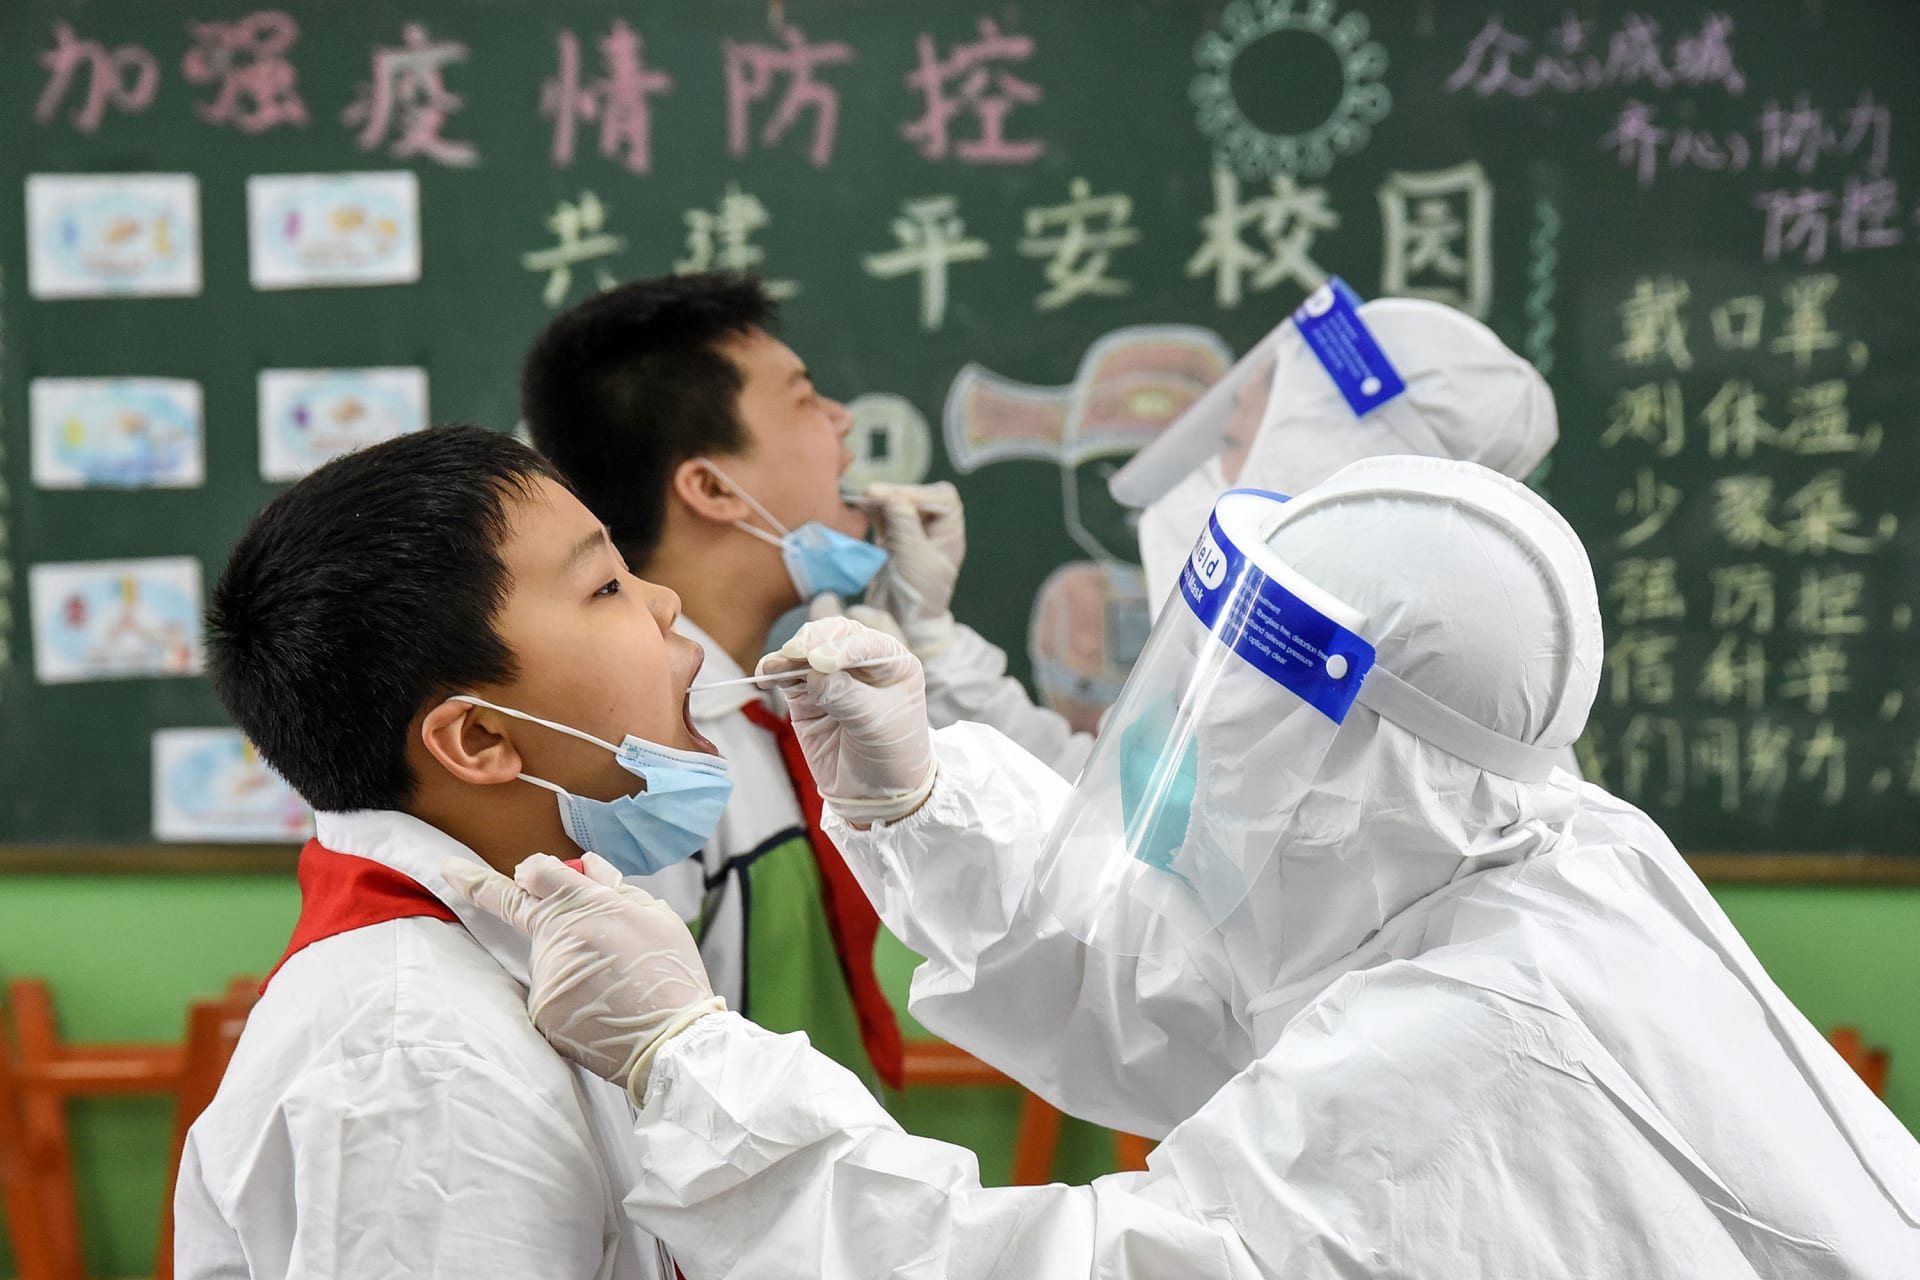 فريق طبي يجري فحوصات للكشف عن فيروس كورونا بين عدد من طلاب المدارس في الصين